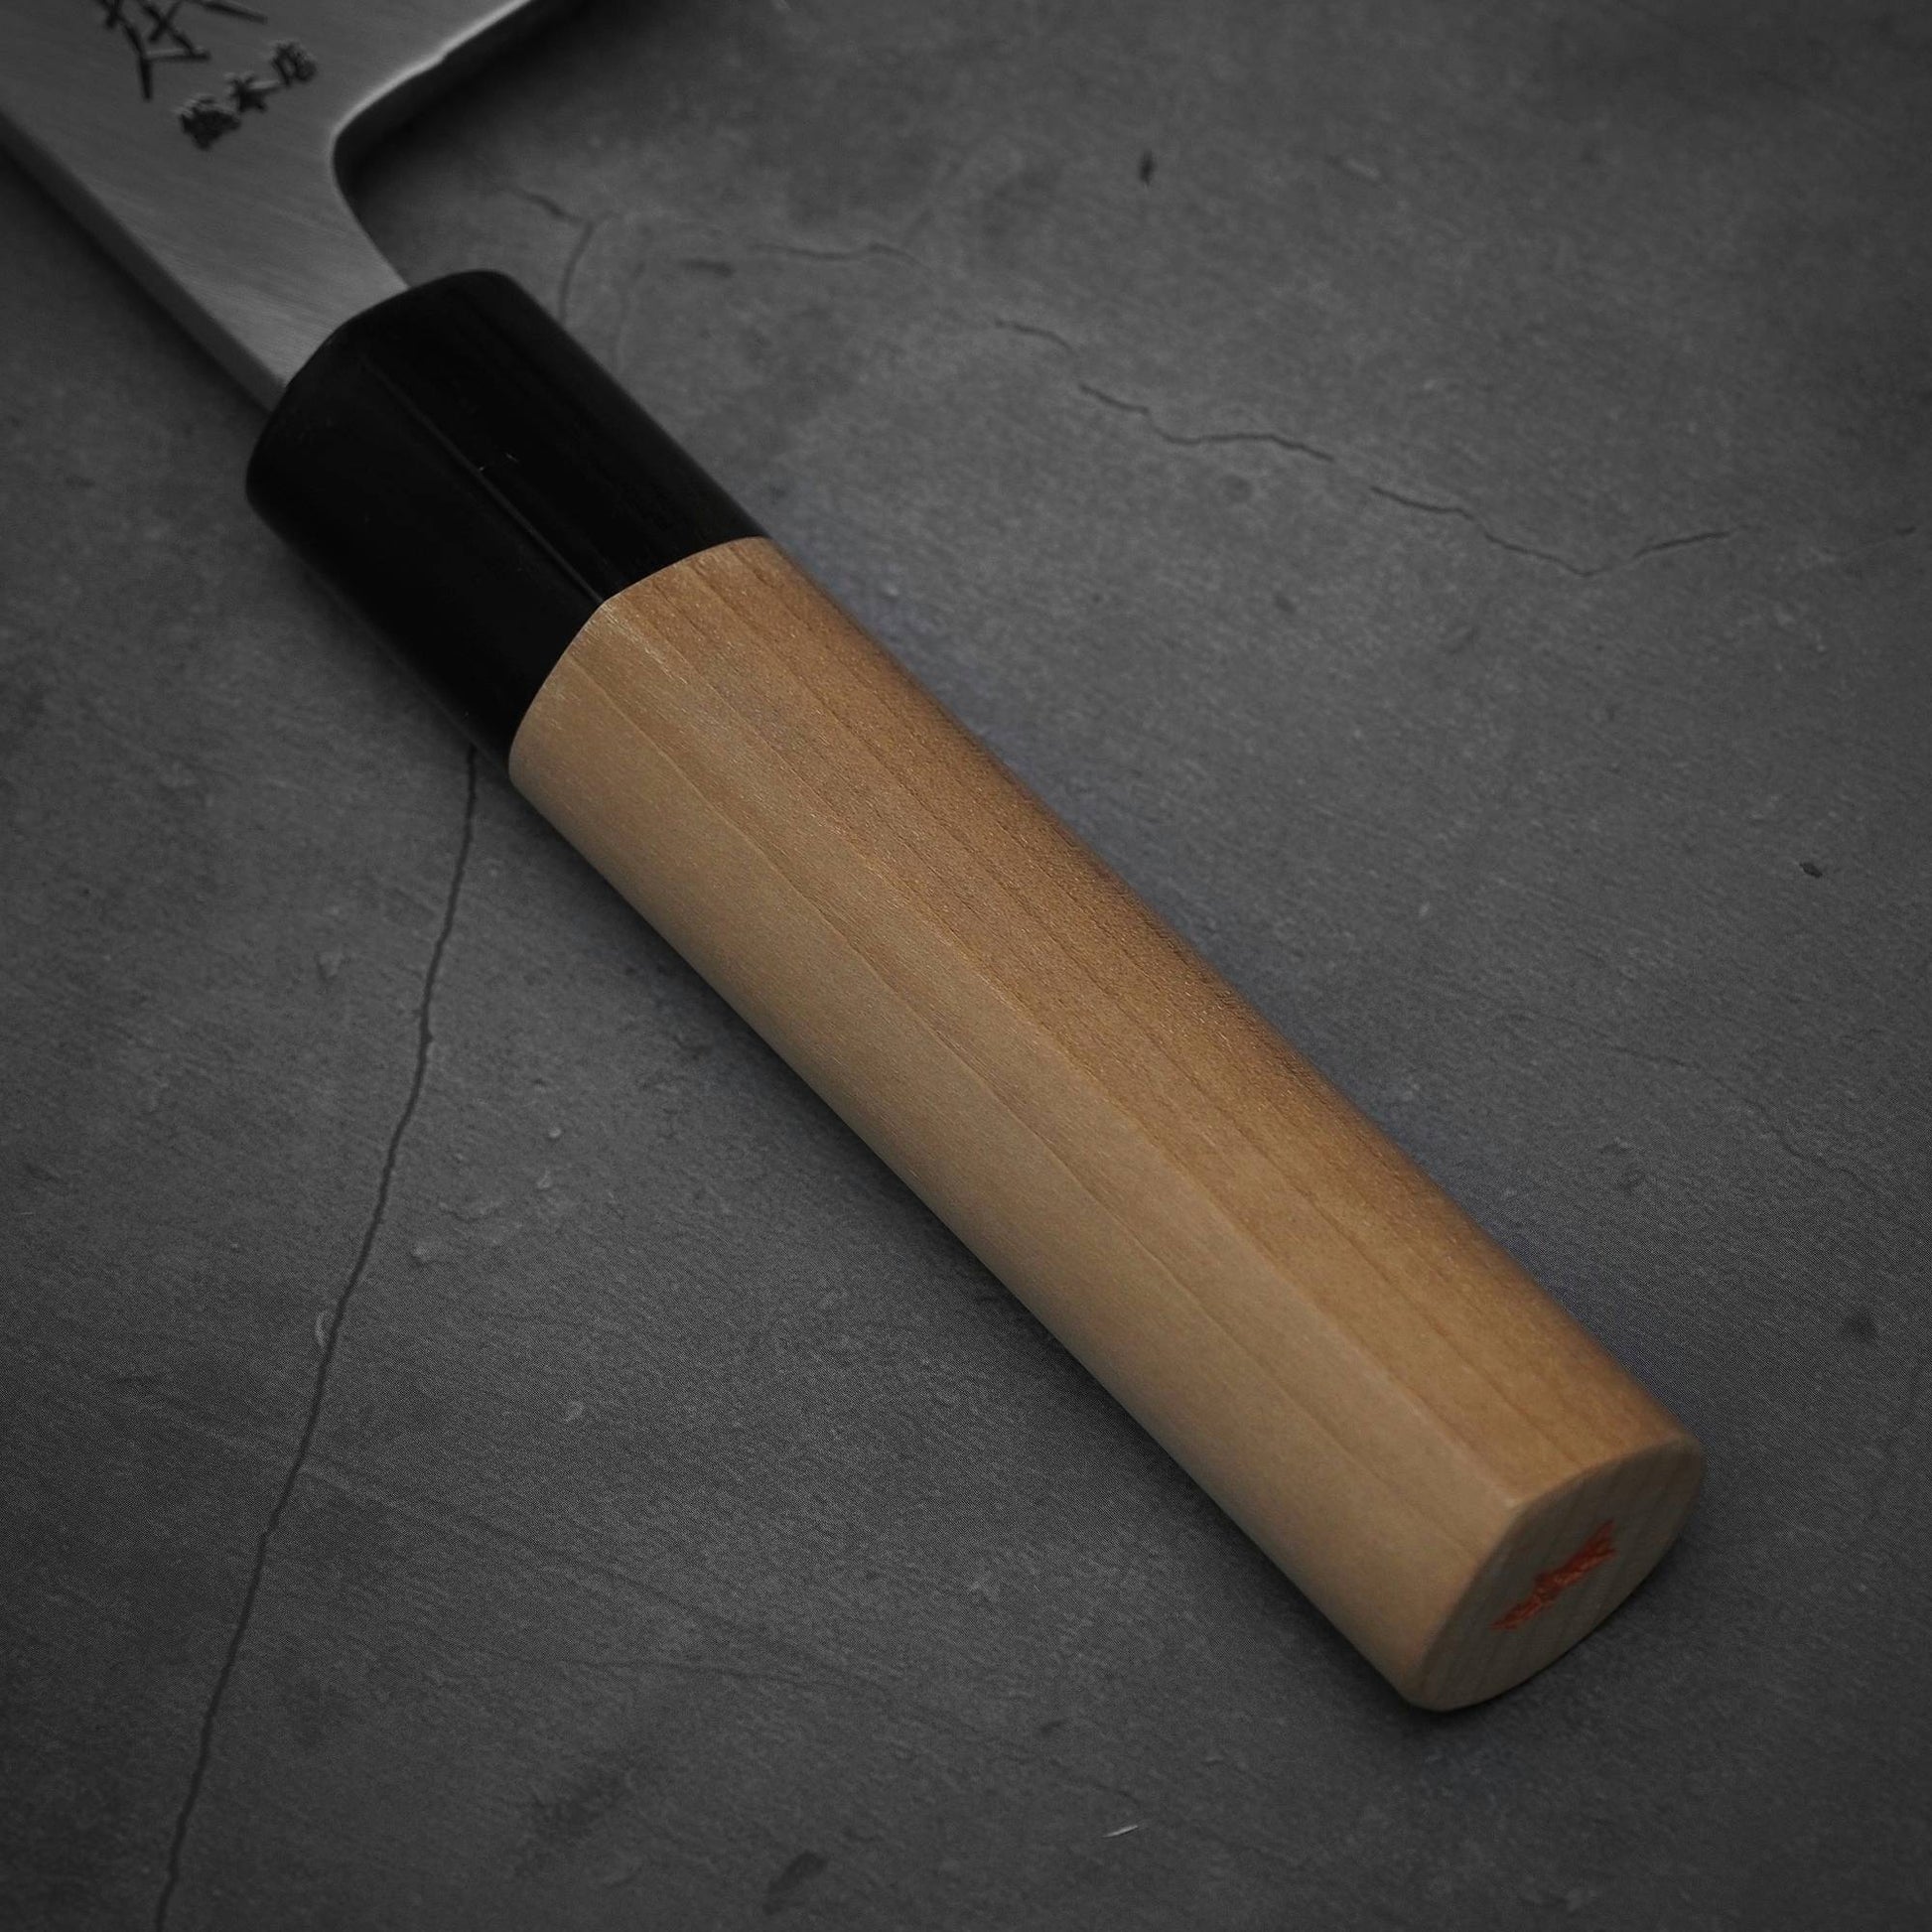 Close up view of the handle of Masamoto KS shirogami#2 deba knife